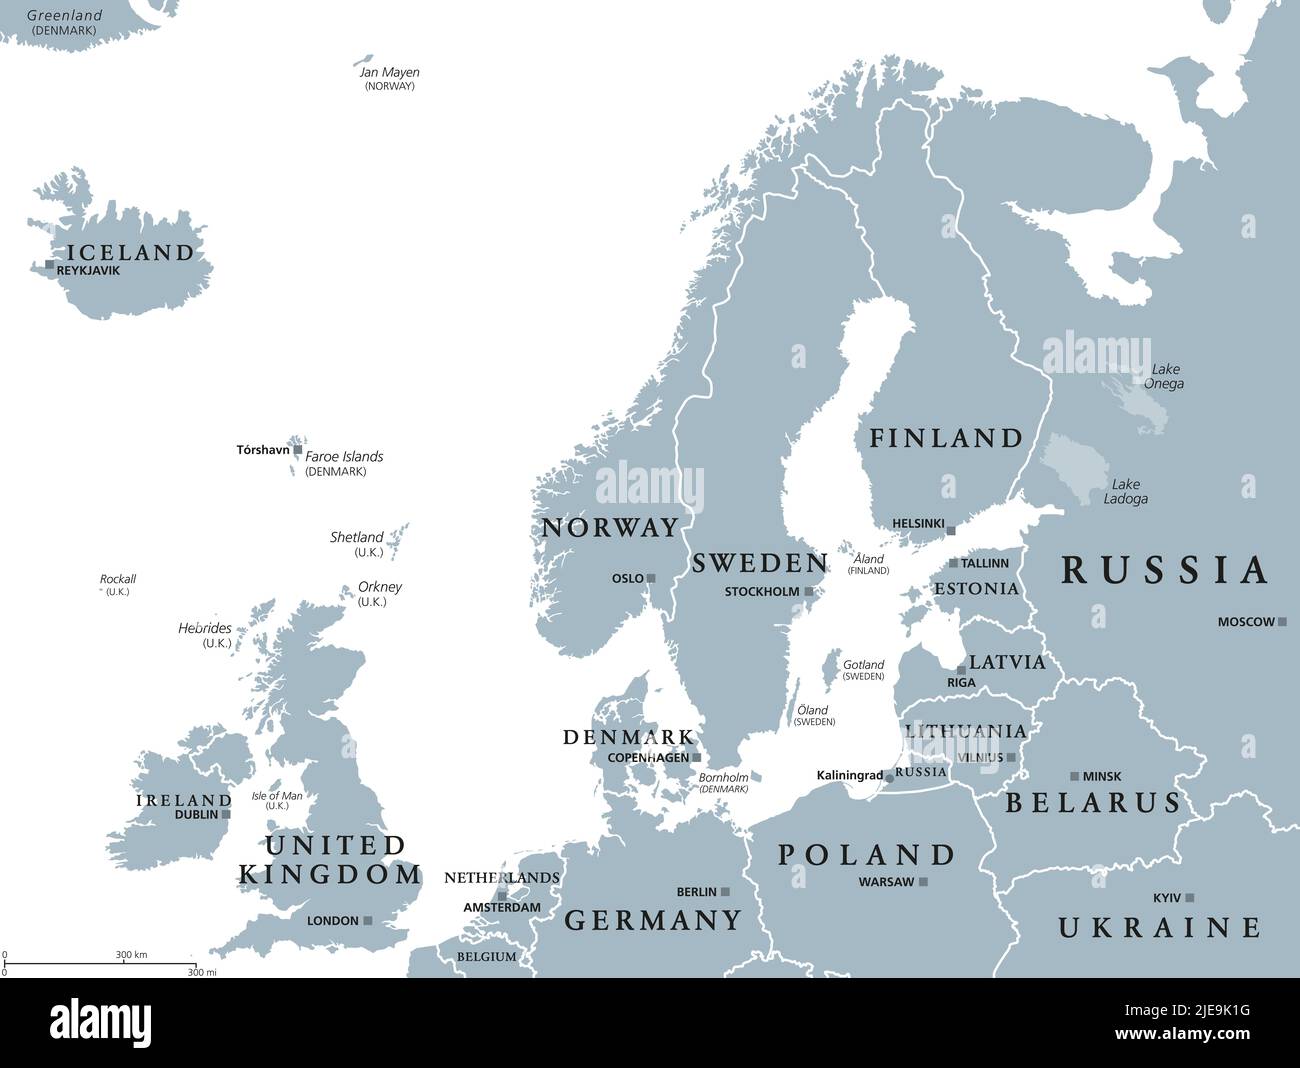 Europa settentrionale, mappa politica grigia. Isole britanniche, Fennoscandia, Penisola dello Jutland, pianura baltica e isole al largo della terraferma del Nord Europa. Foto Stock